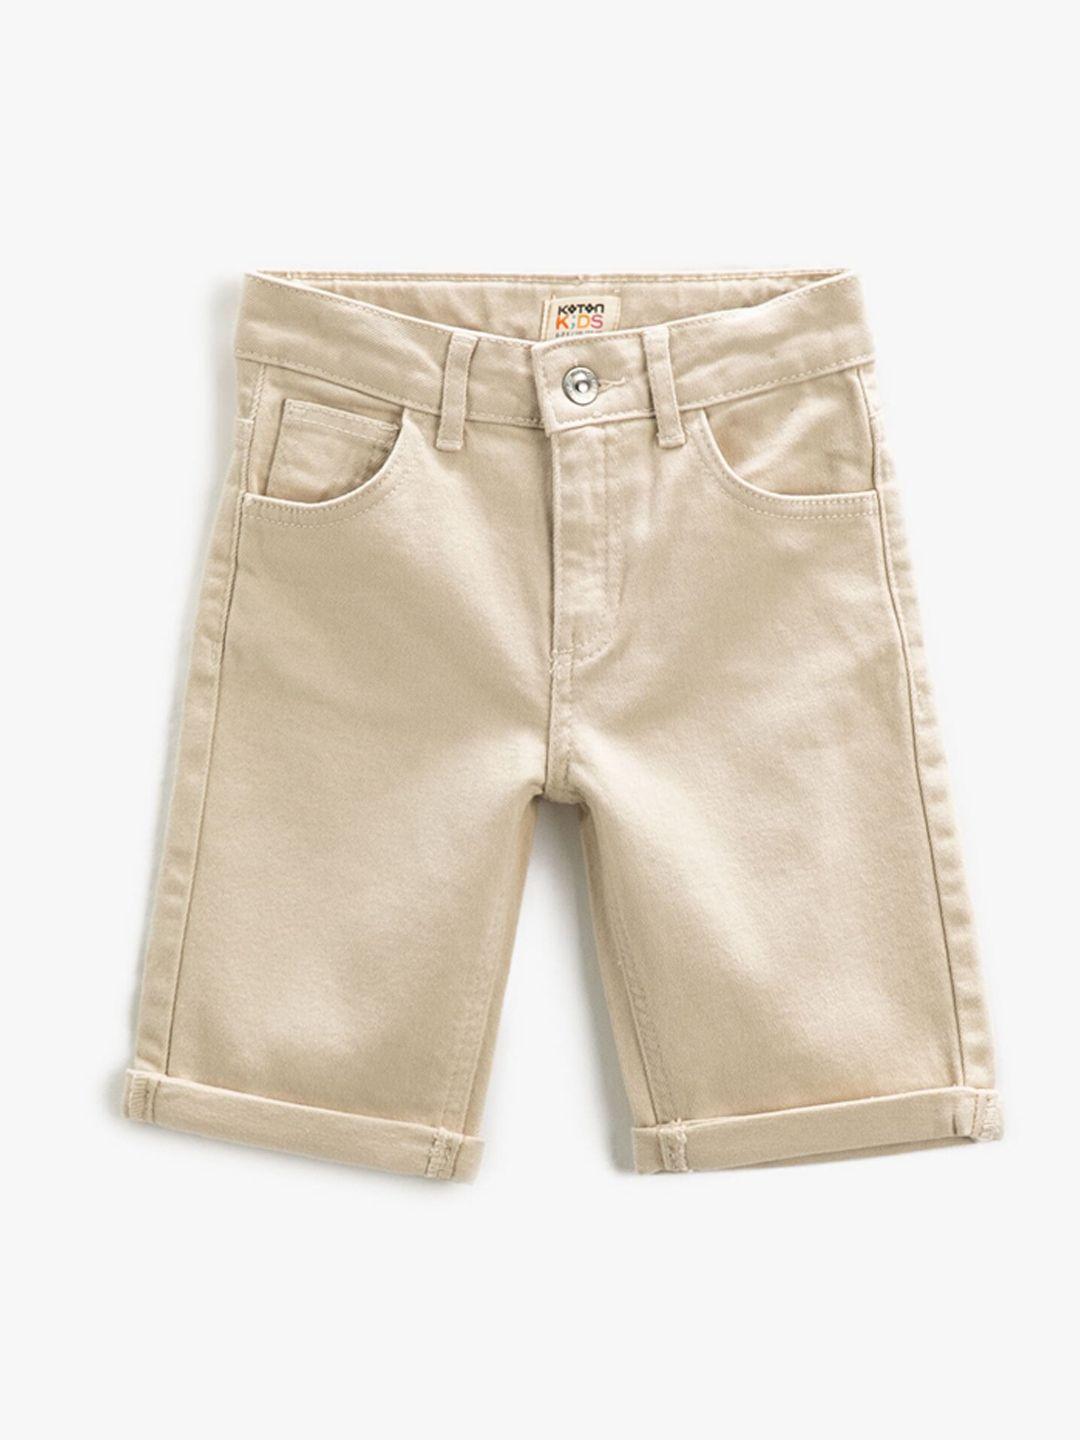 Koton Boys Solid Denim Shorts